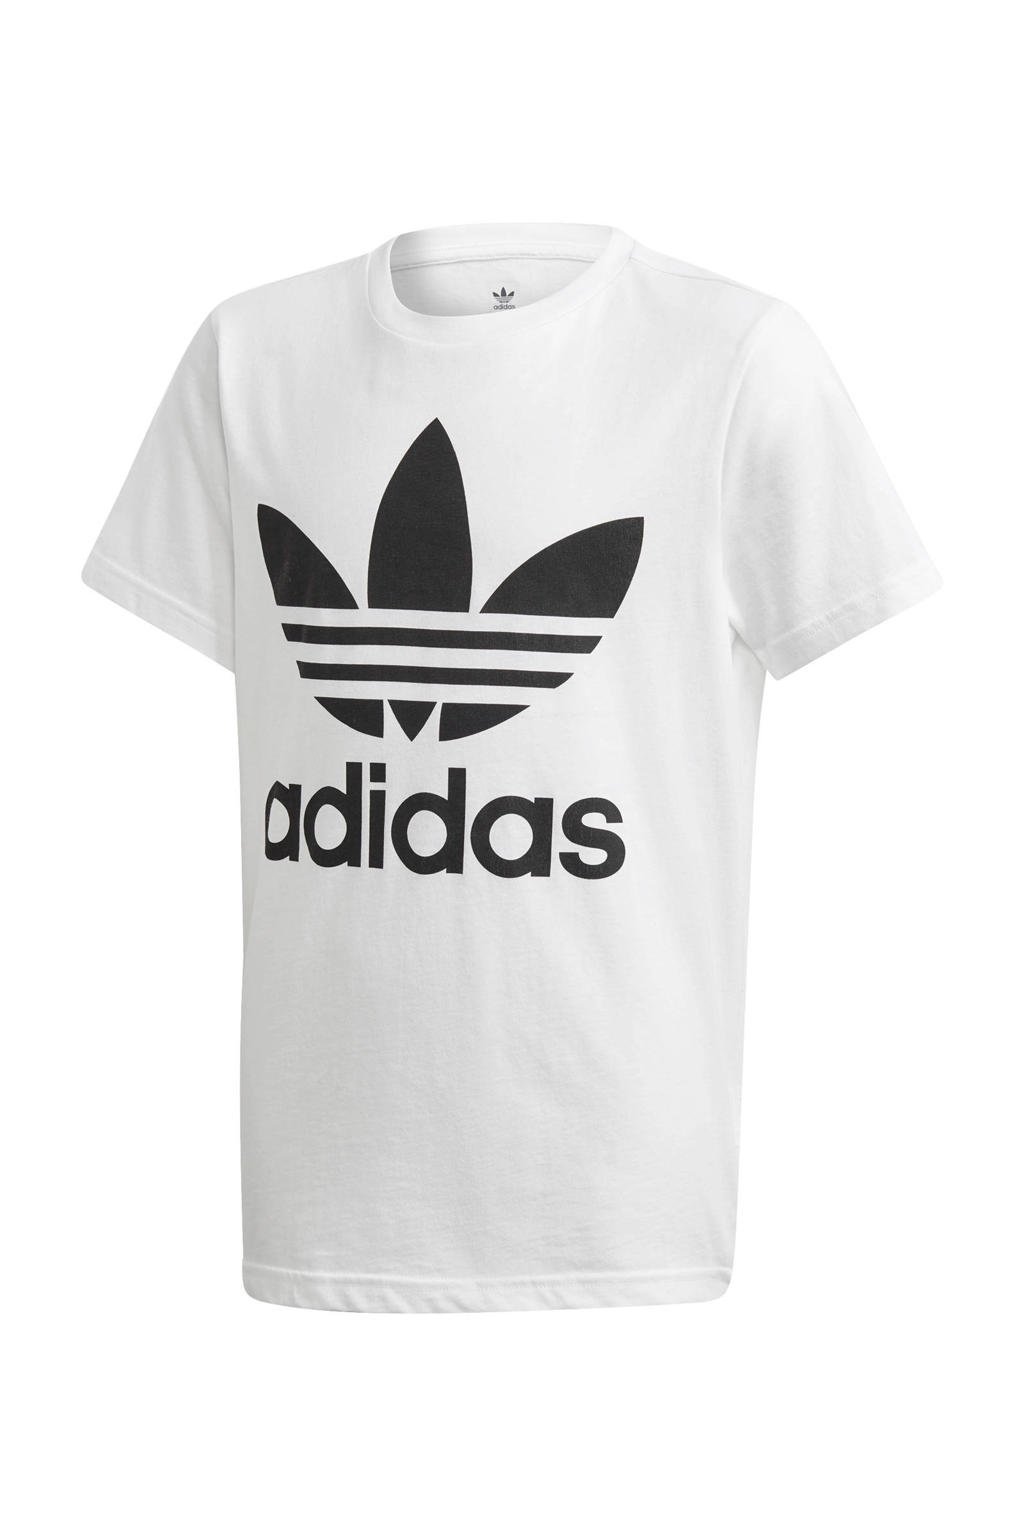 adidas Originals unisex Adicolor T-shirt wit/zwart